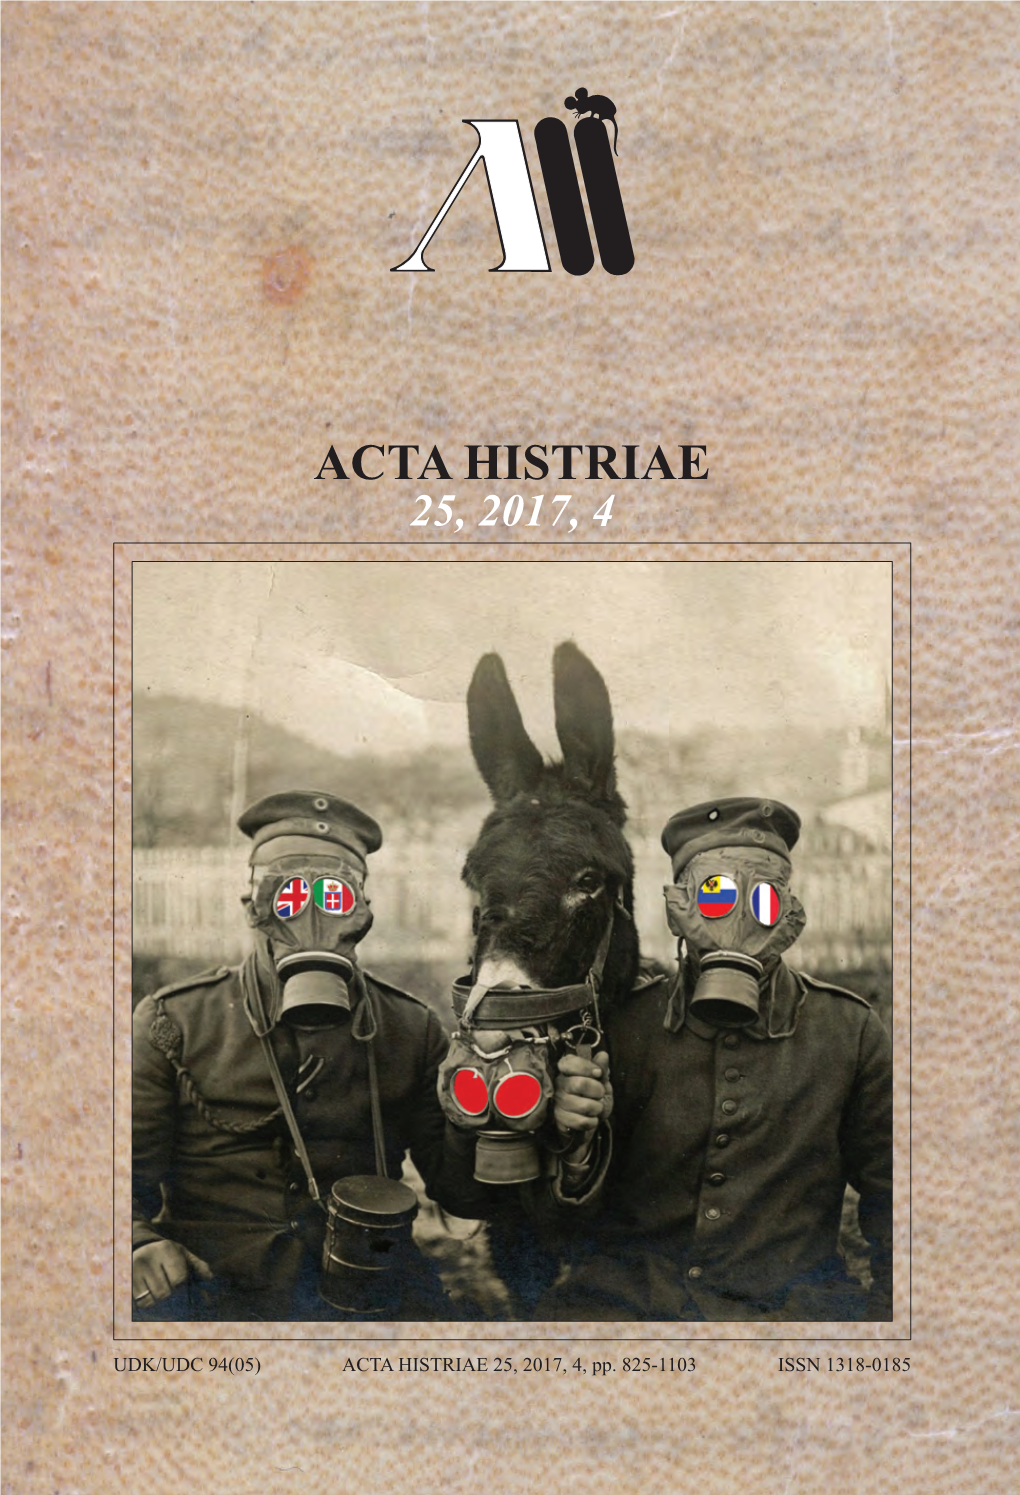 ACTA HISTRIAE 25, 2017, 4, Pp